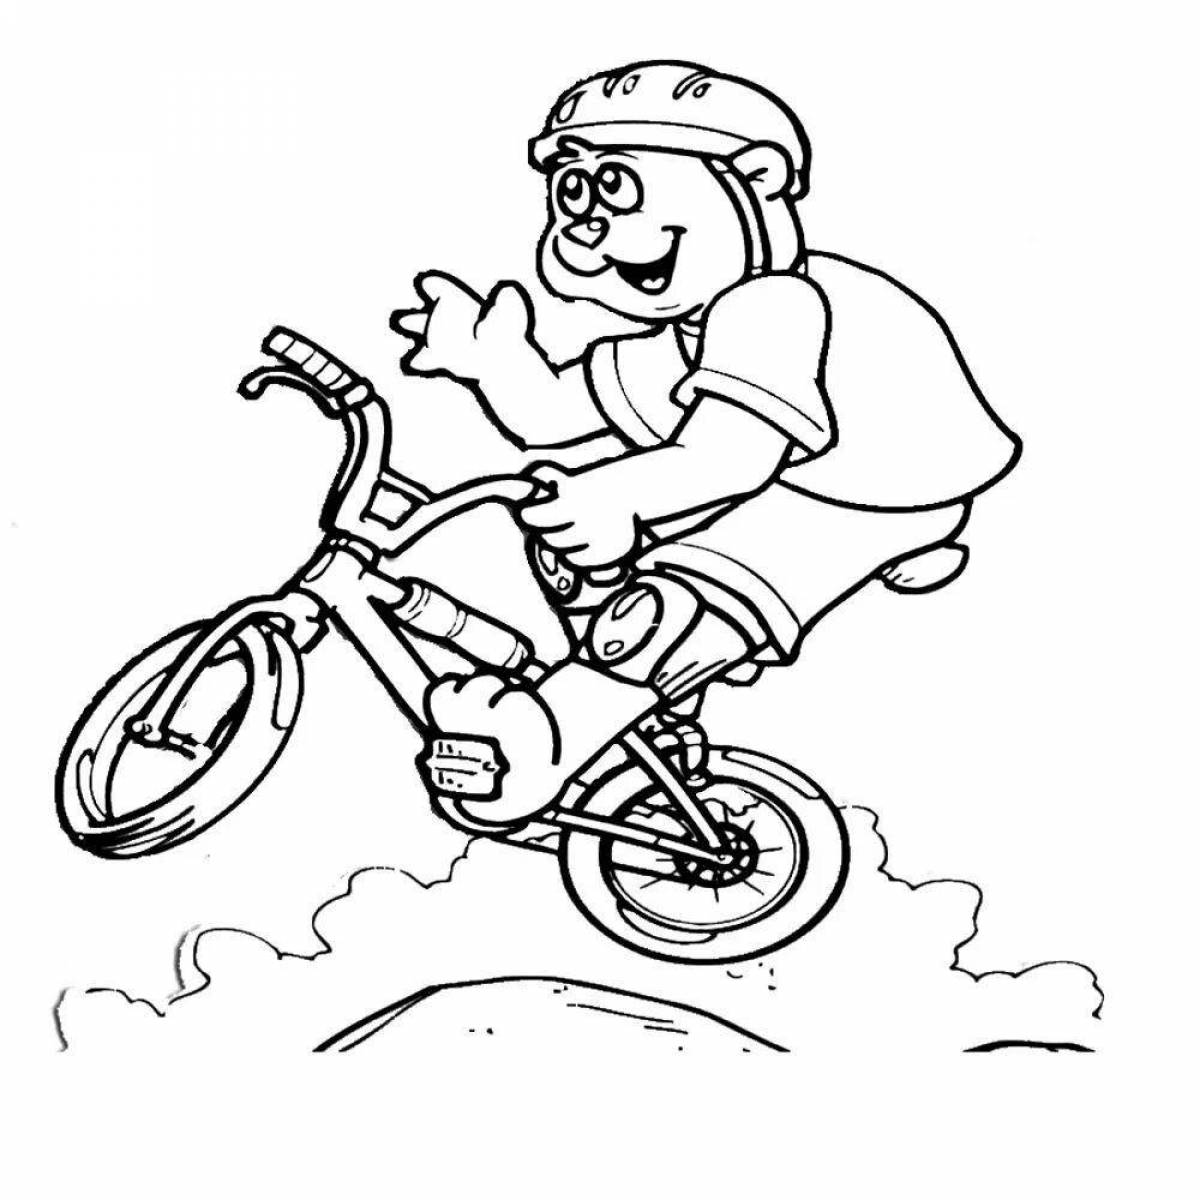 Dazzling boy on a bike